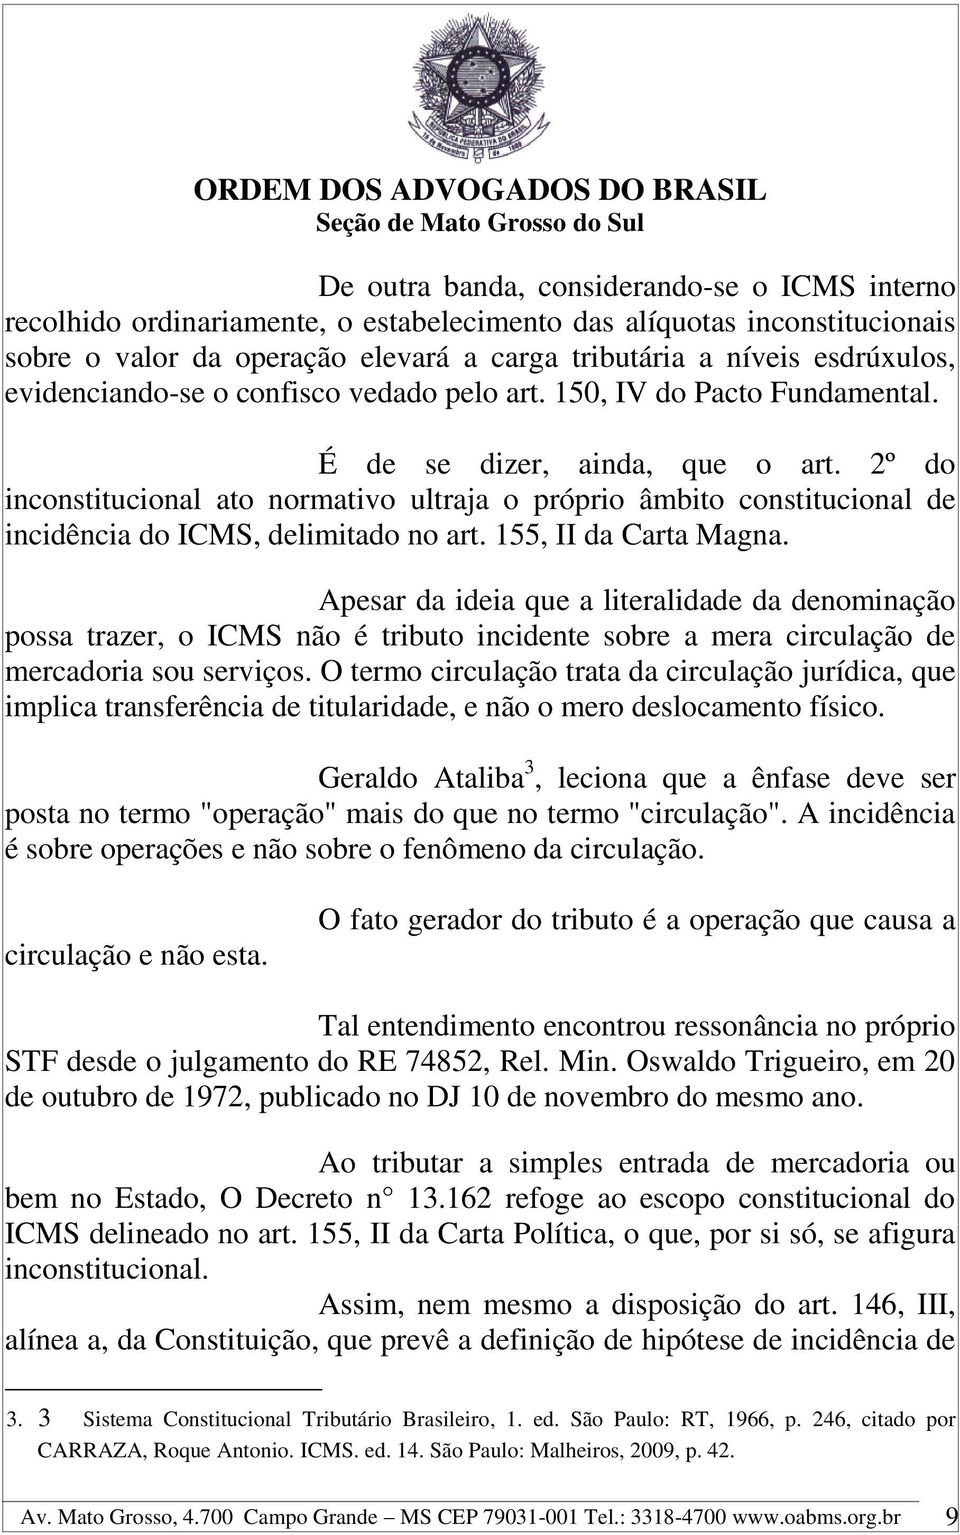 2º do inconstitucional ato normativo ultraja o próprio âmbito constitucional de incidência do ICMS, delimitado no art. 155, II da Carta Magna.